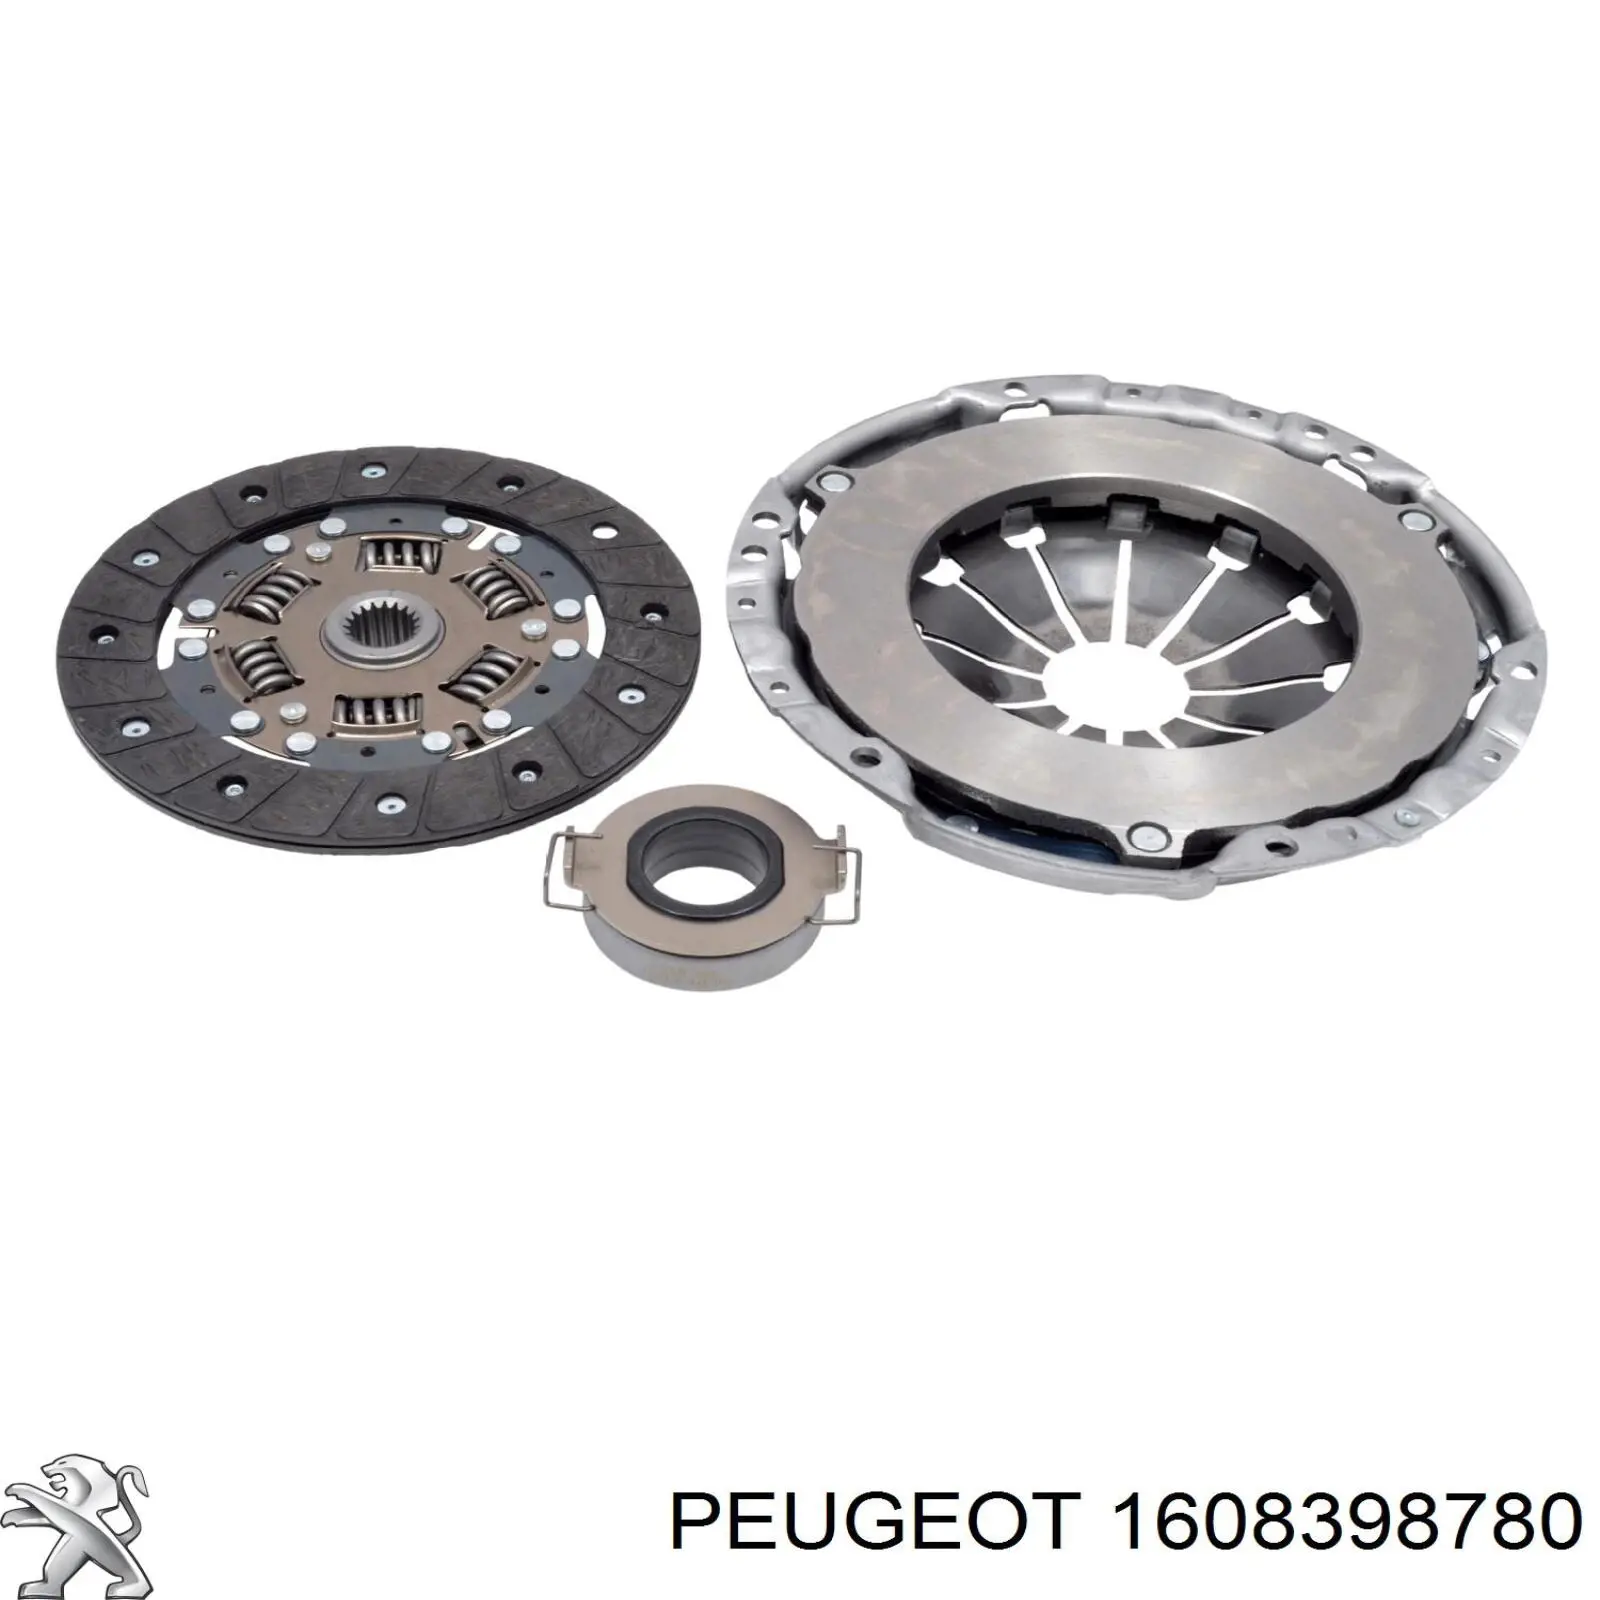 Kit de embrague (3 partes) 1608398780 Peugeot/Citroen